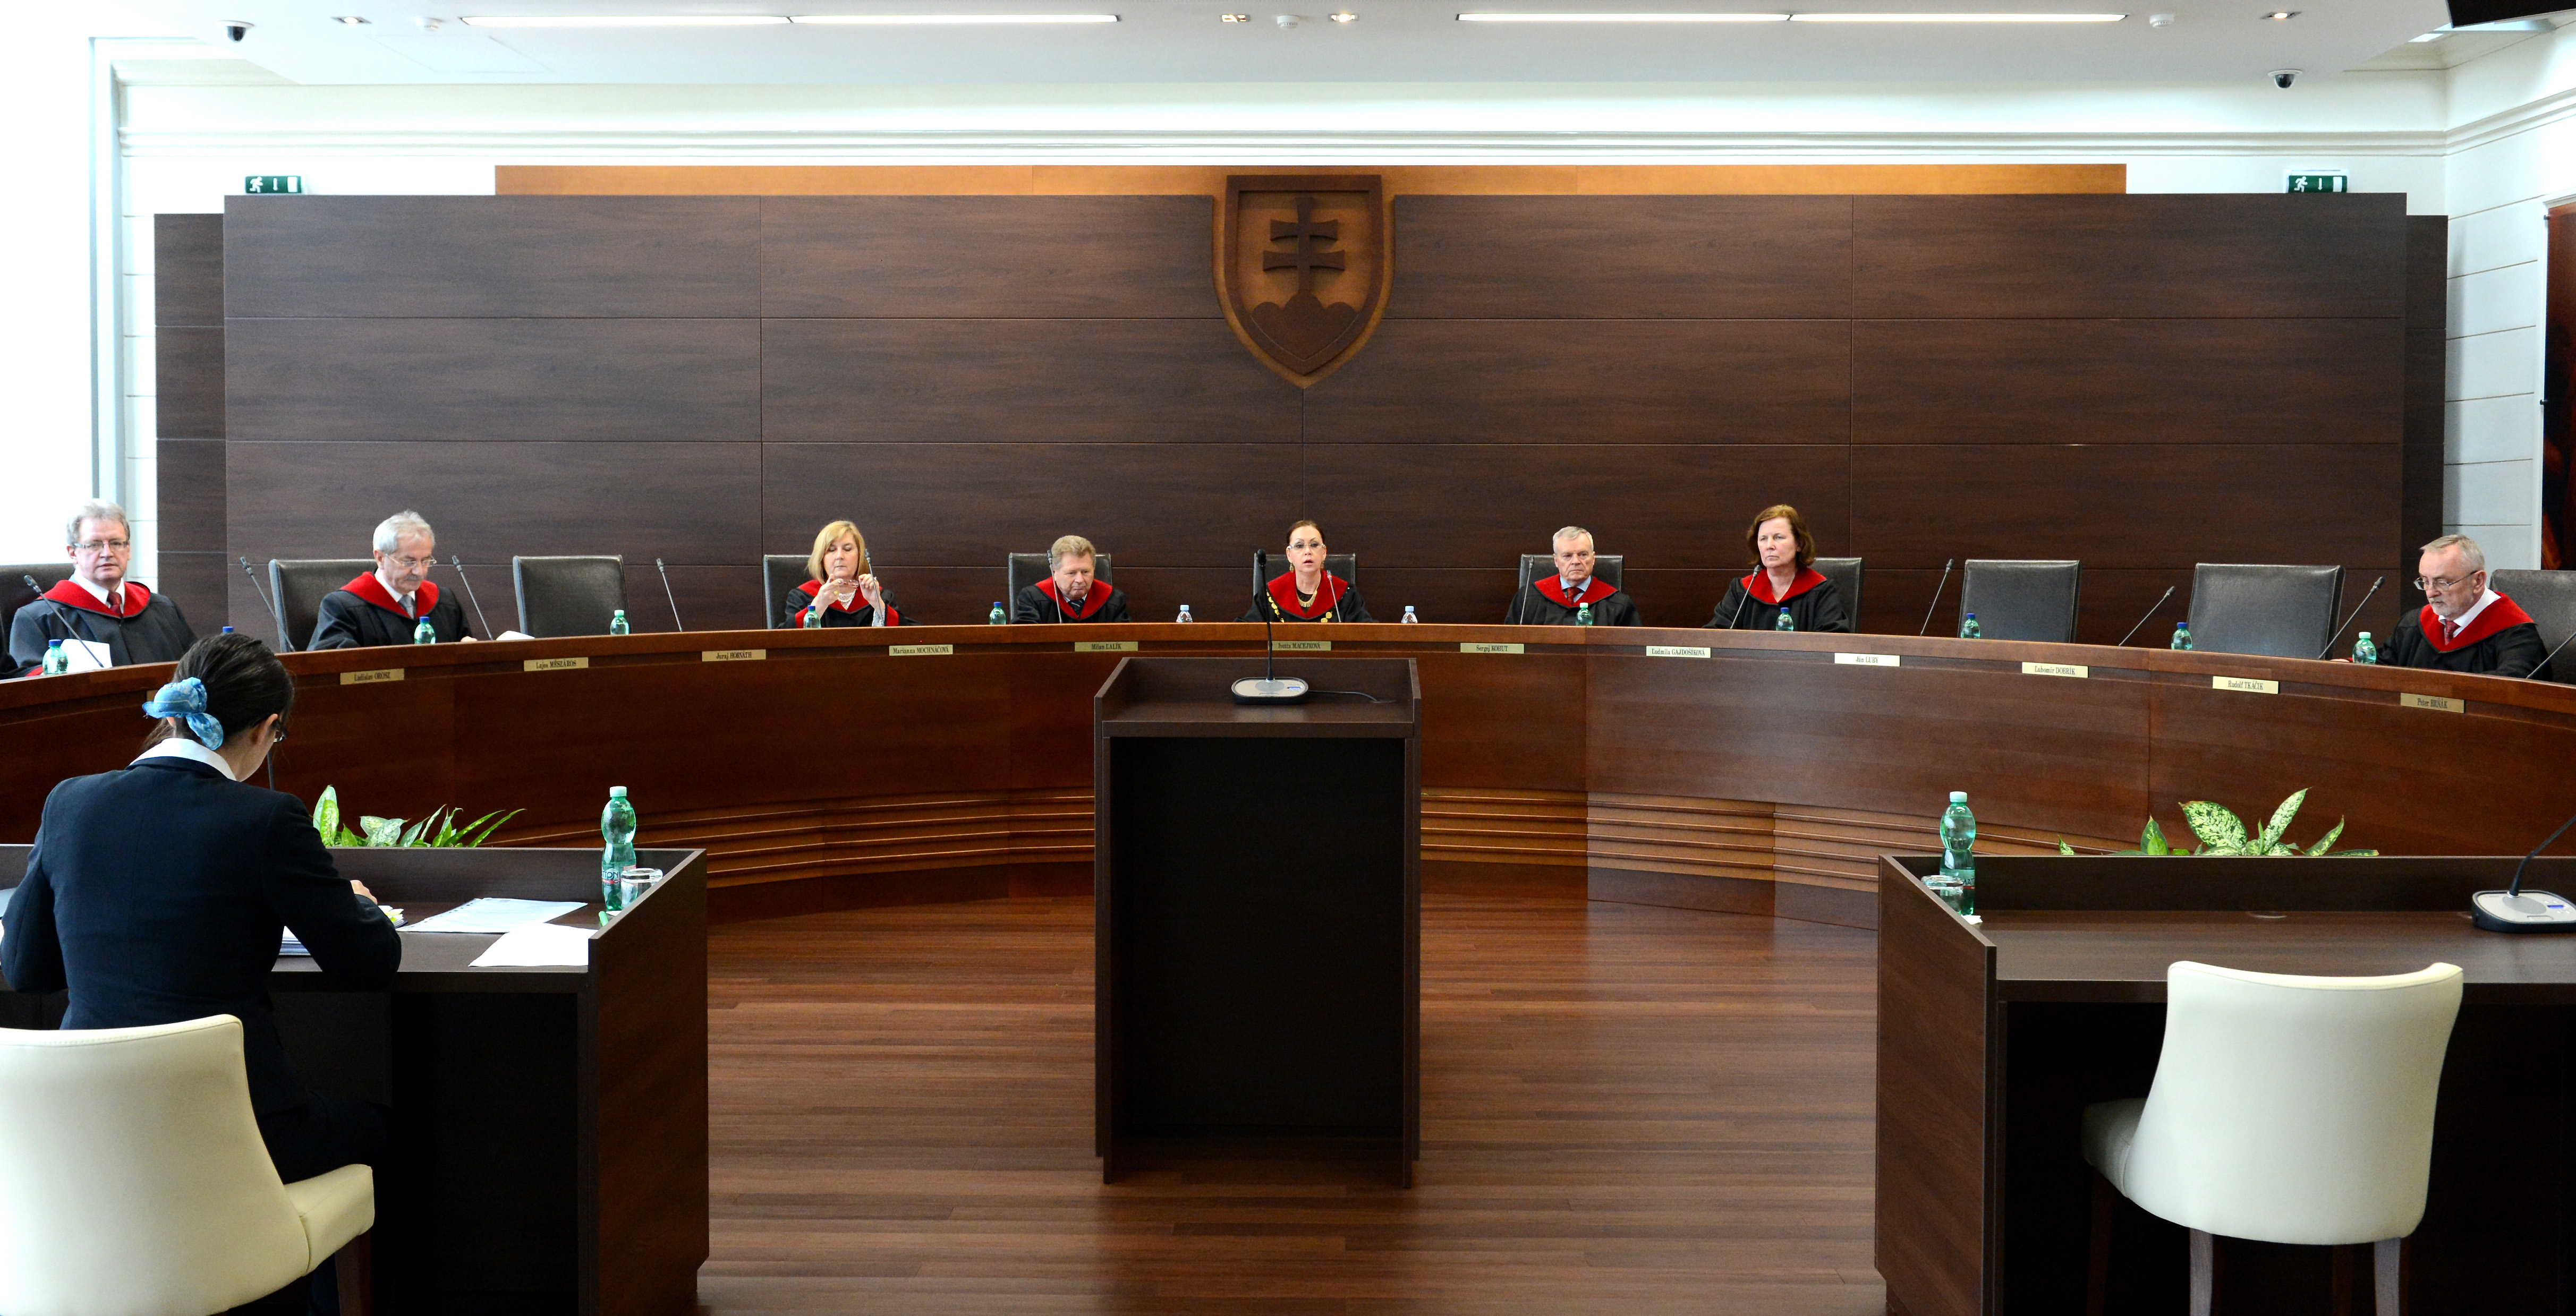 Verejné zasadnutie pléna Ústavného súdu SR (ÚS SR) v Košiciach, archívna snímka